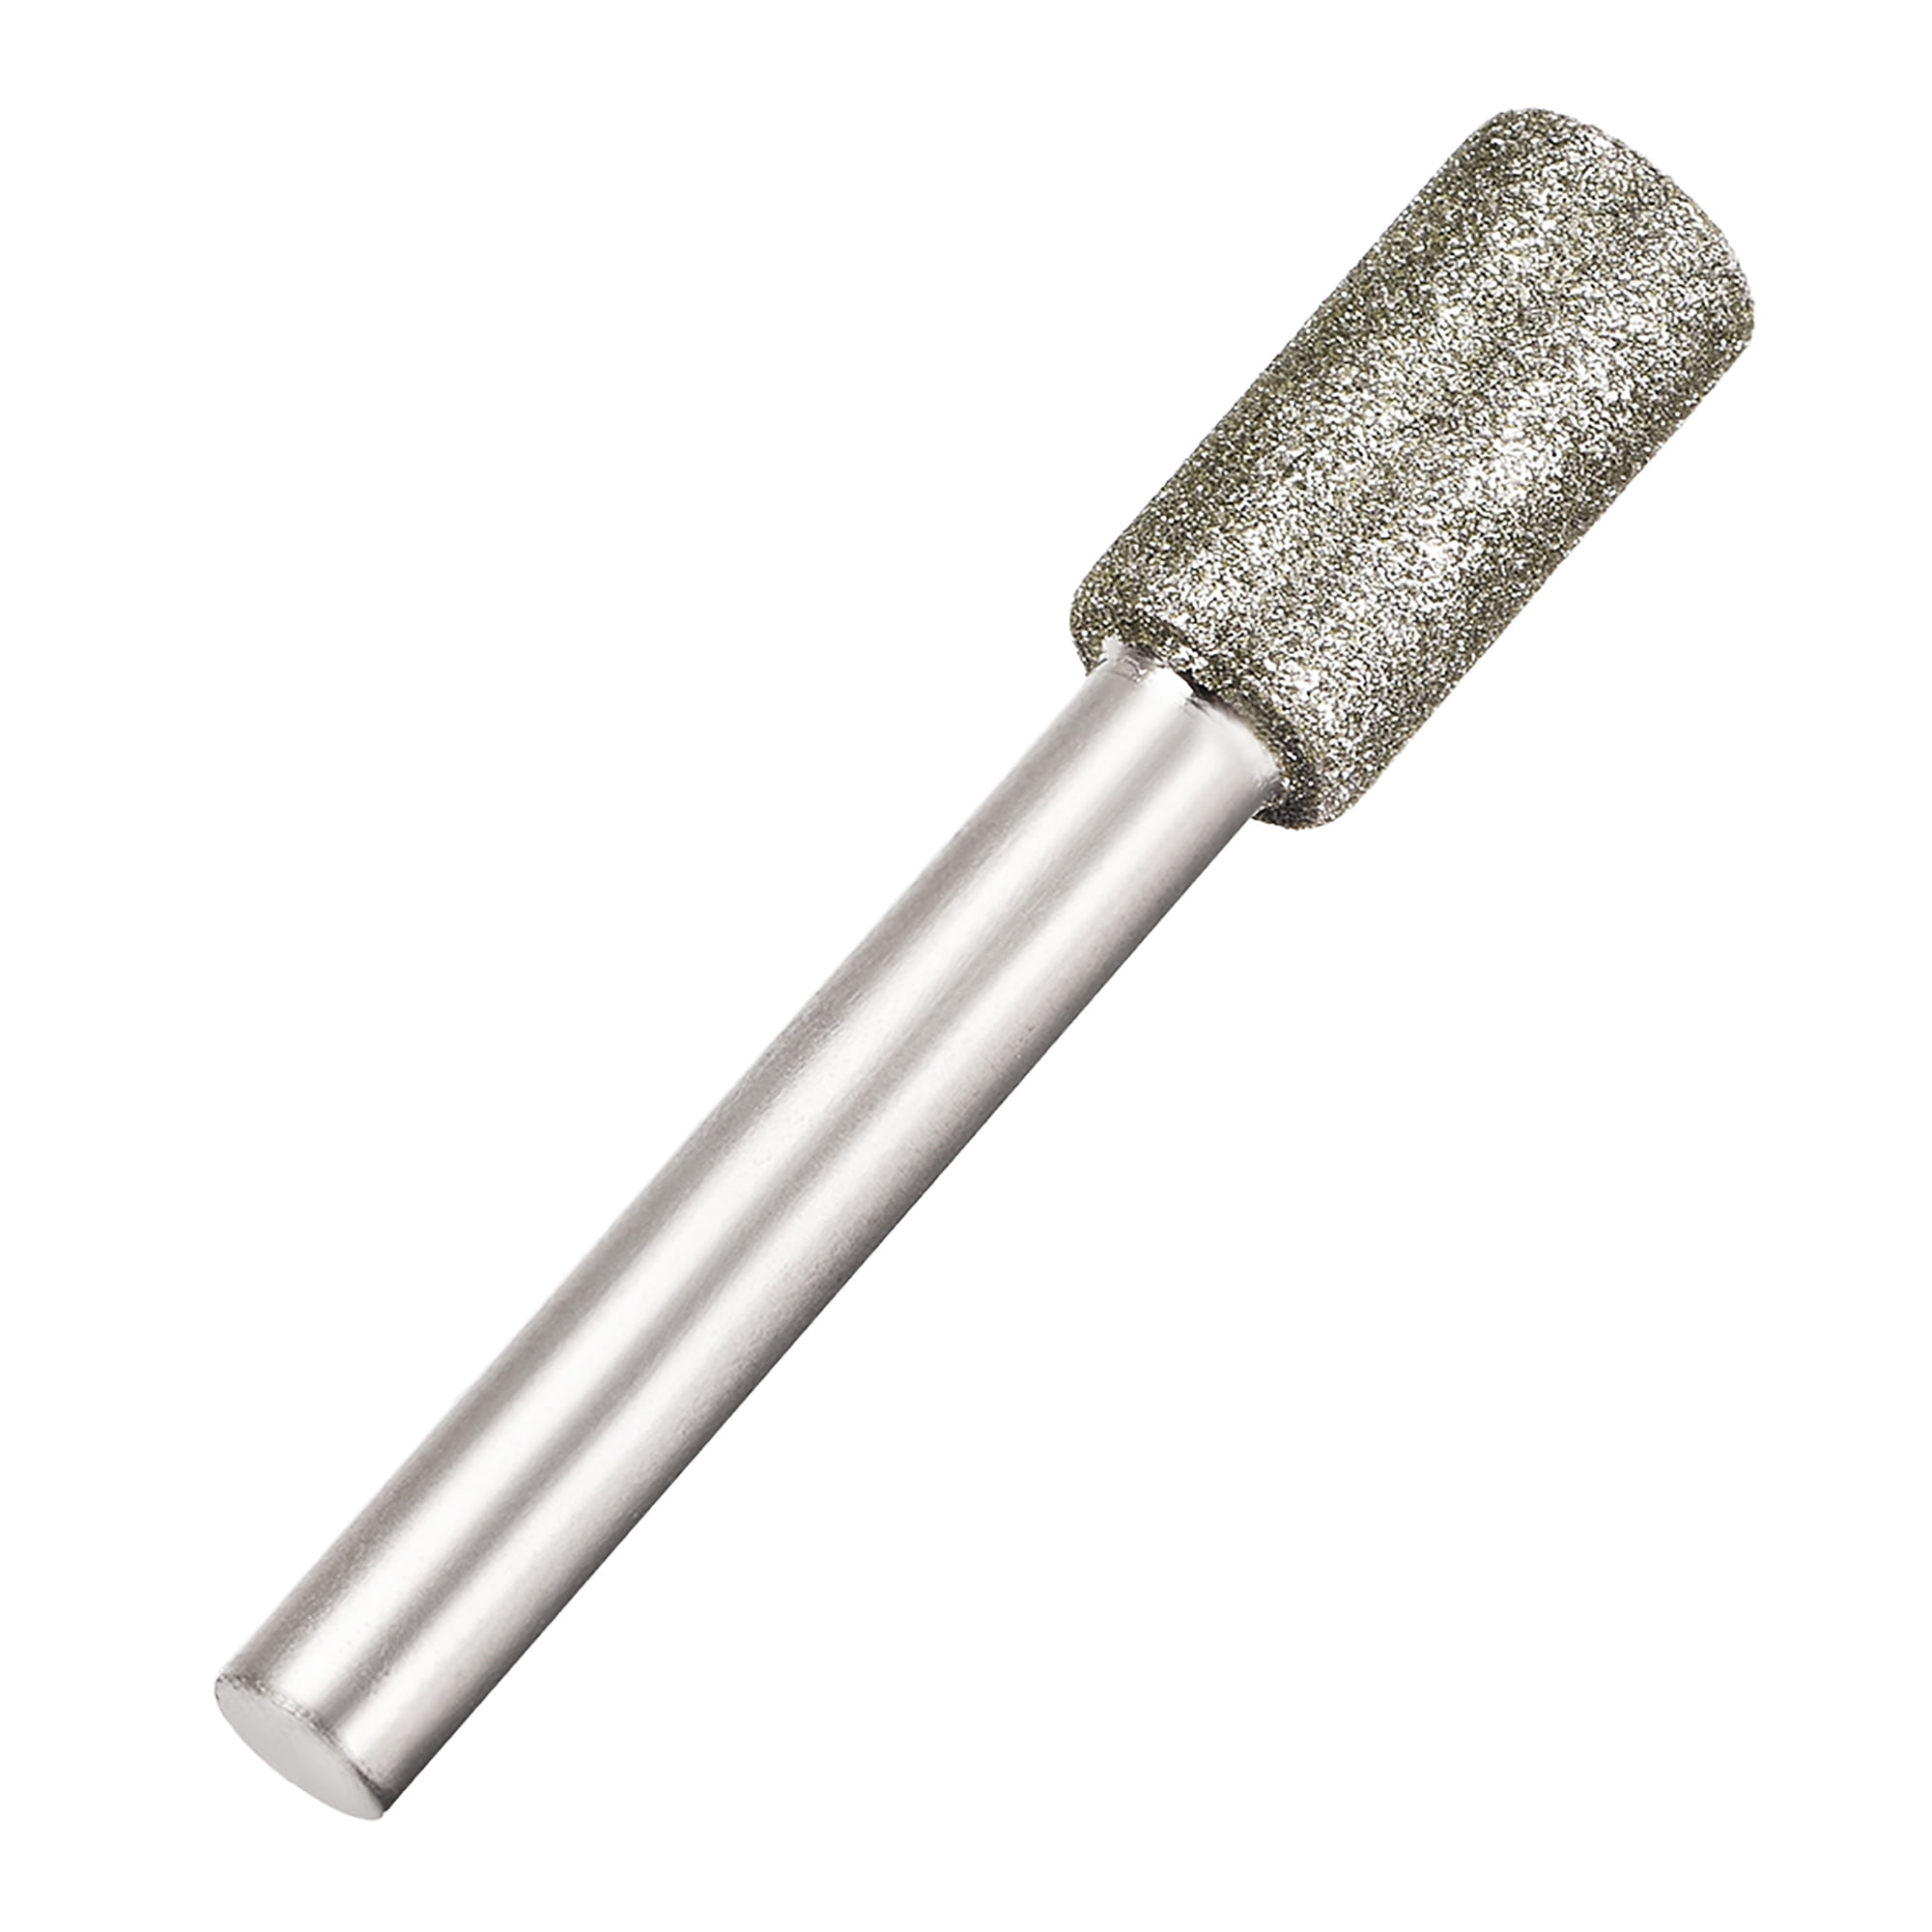 3mm - 12mm Diamond Burr Grinding Bits 46 150 Grit For Drill Dremel